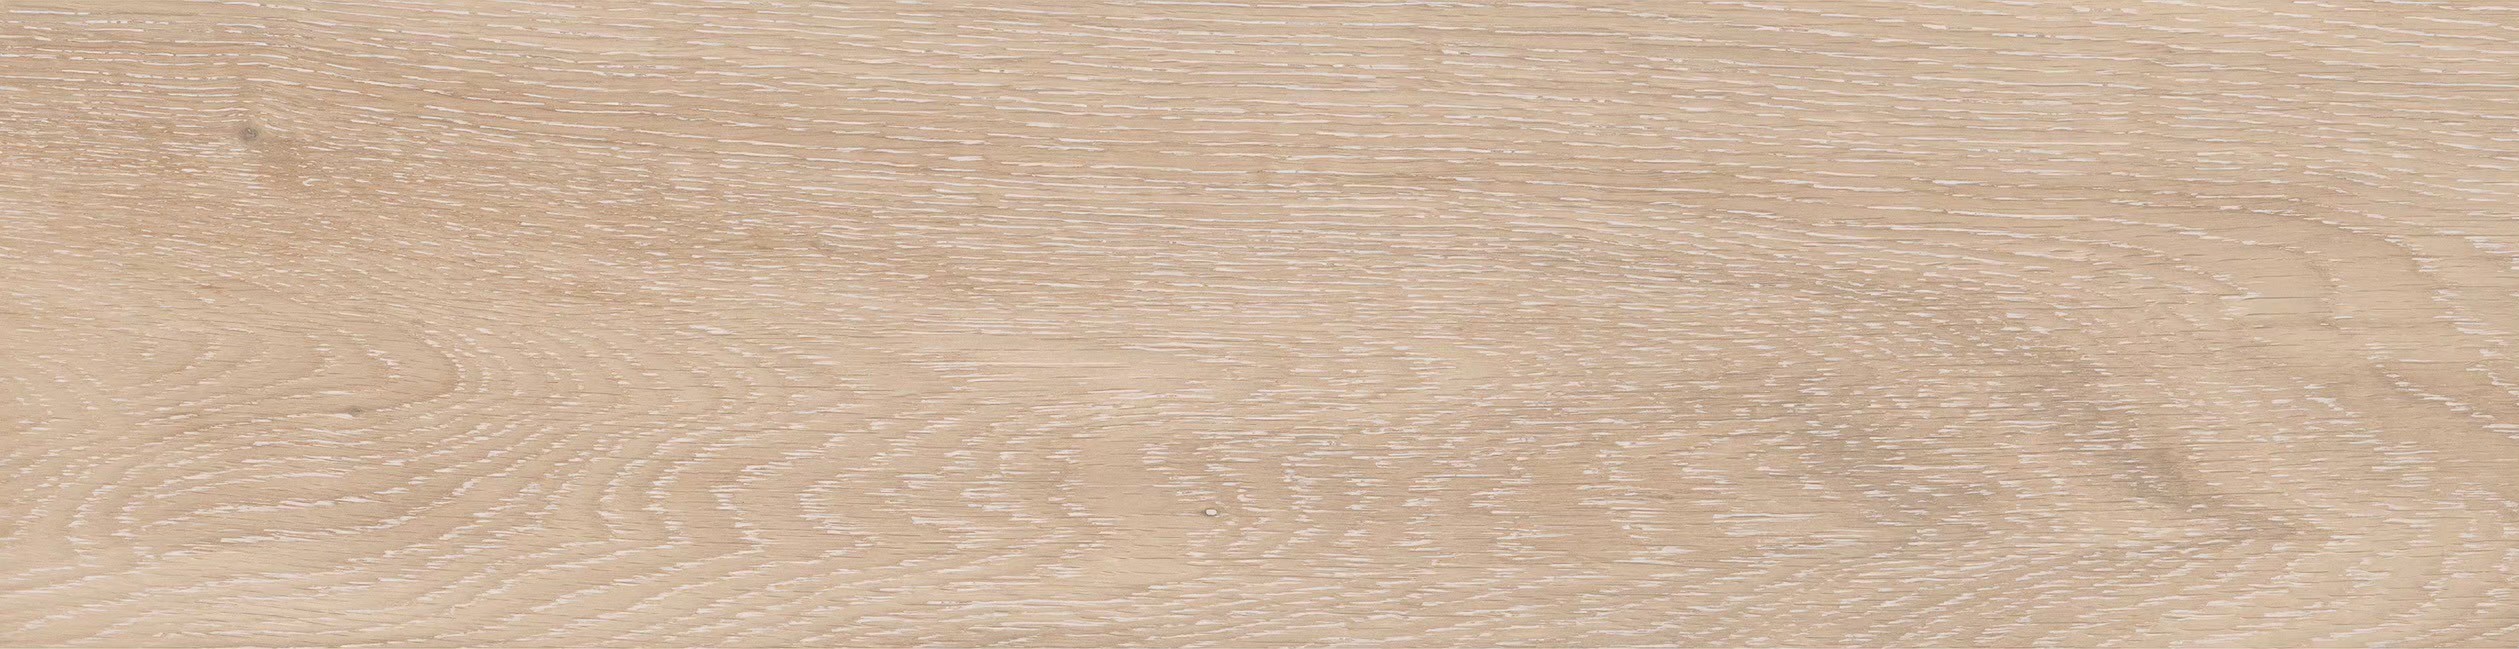 莫里斯木紋磚